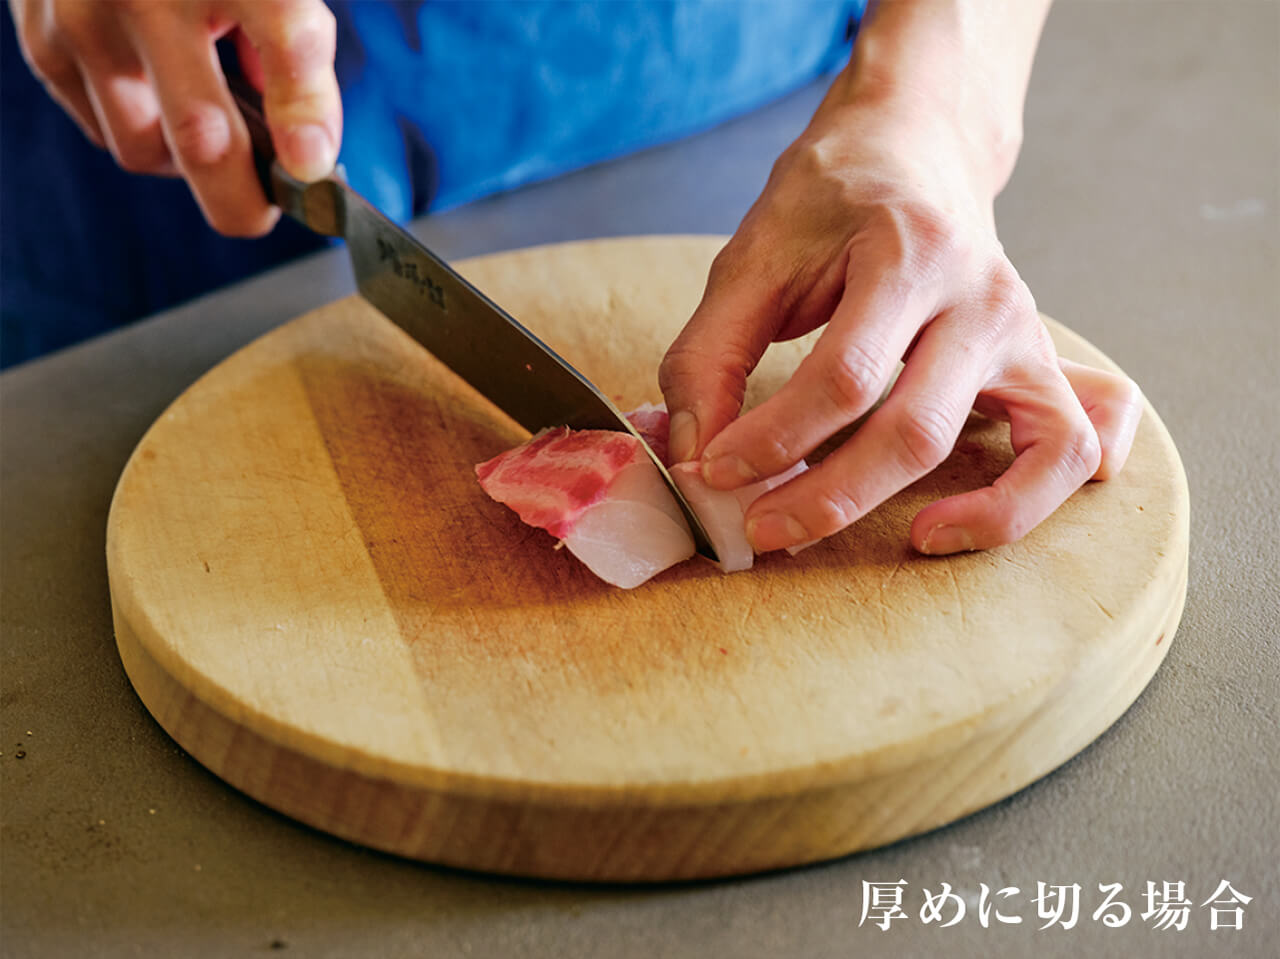 刺し身など厚めに切る場合は包丁を立てる／厚めに切る場合